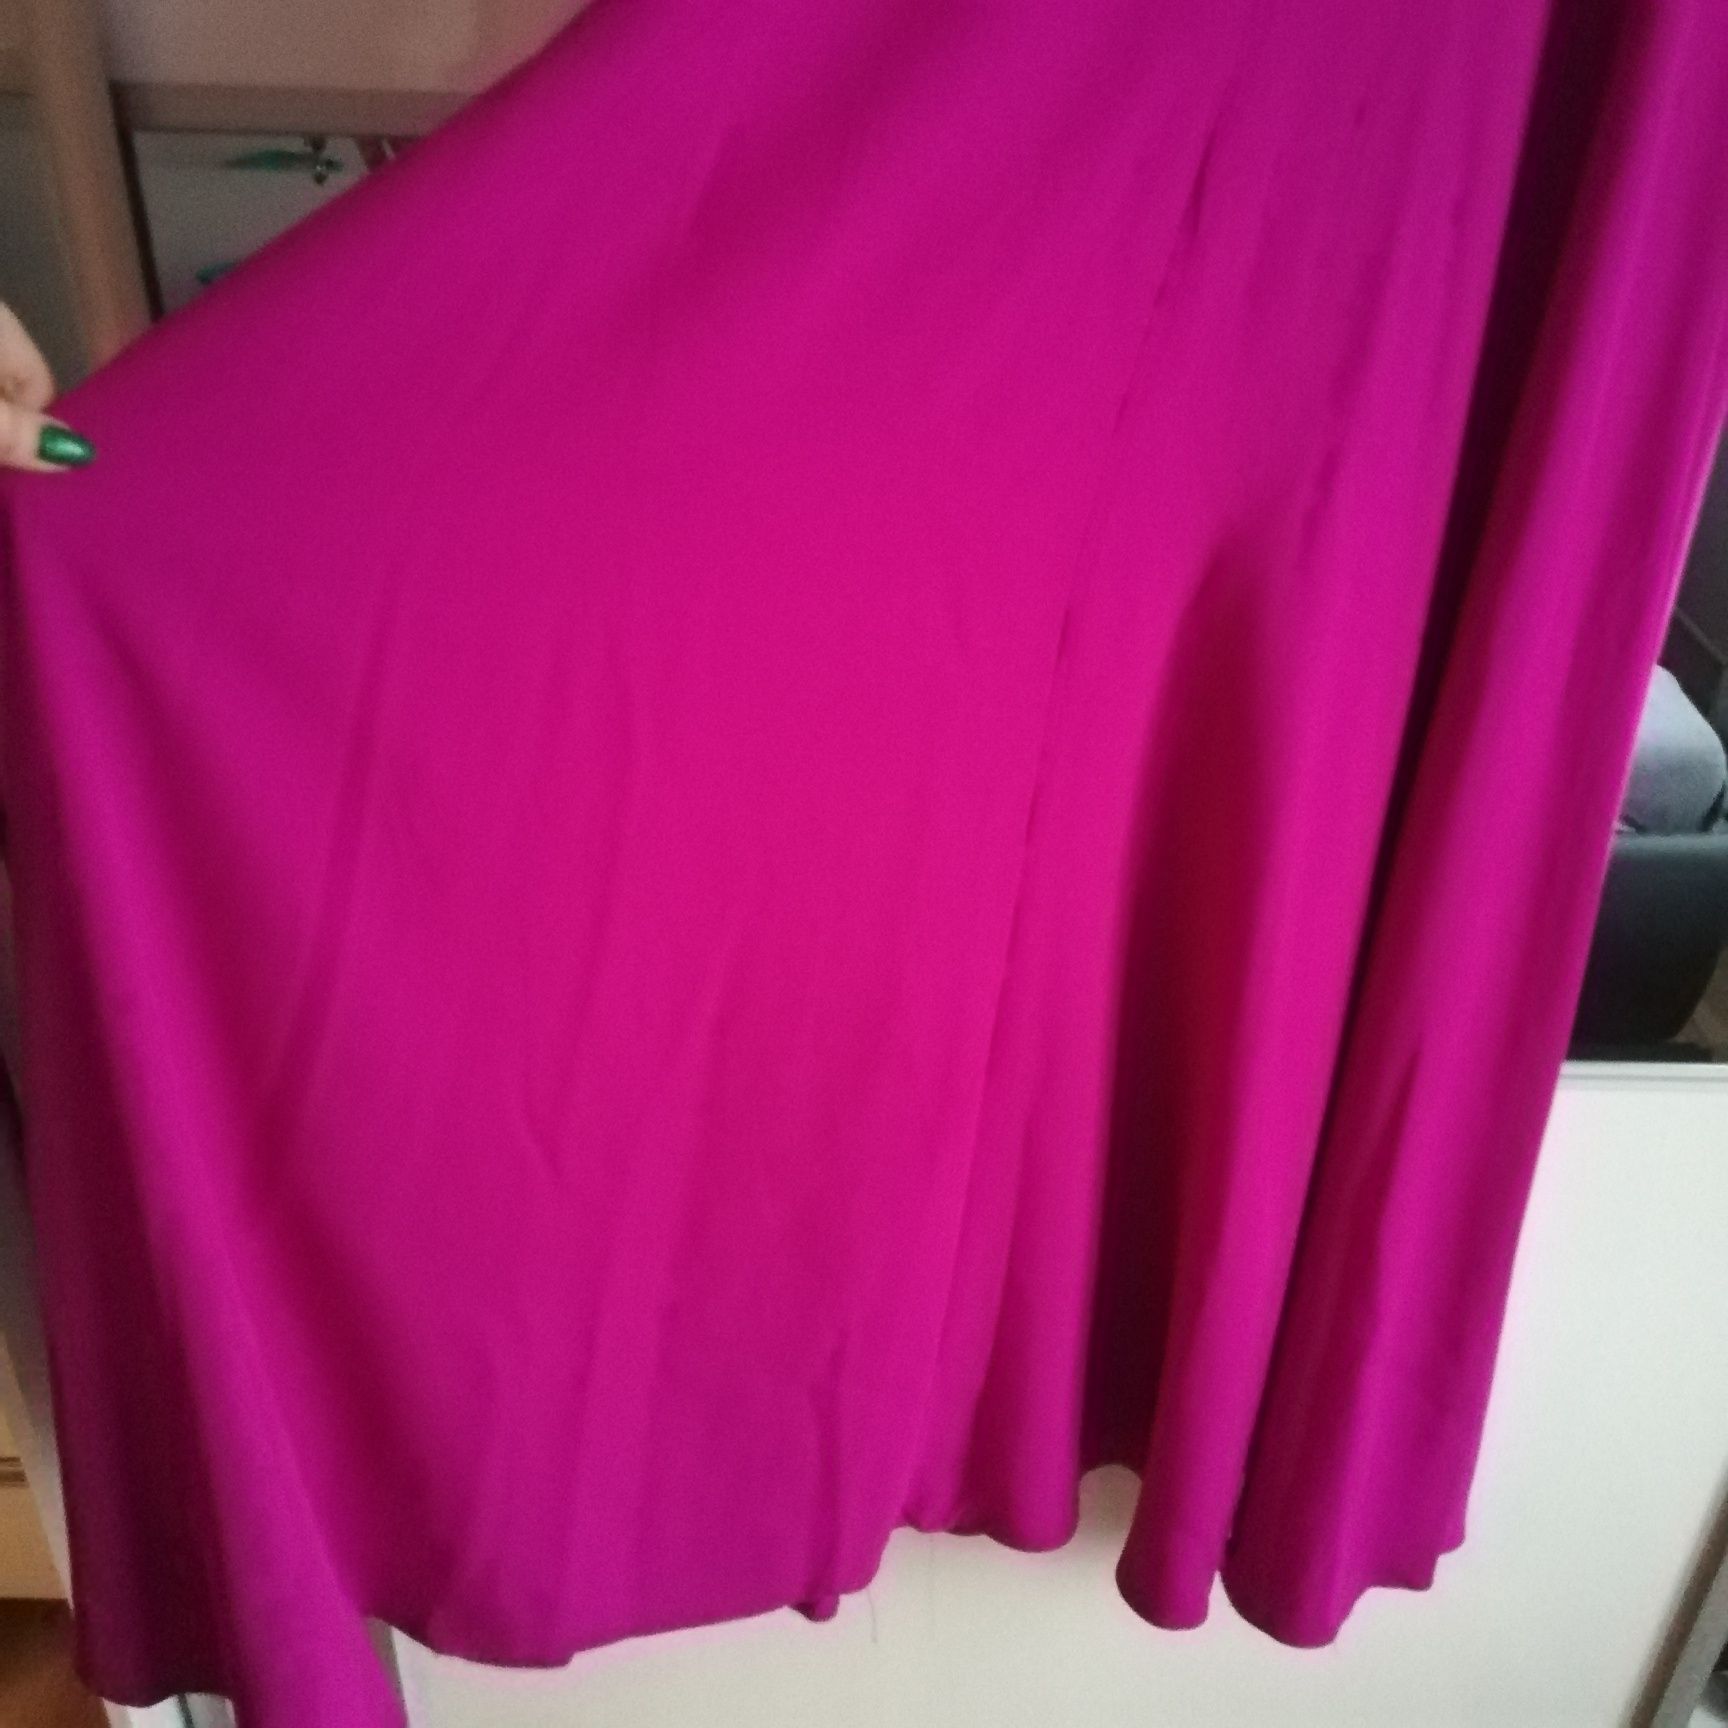 Piekna dluga sukienka suknia w wyjatkowym kolorze